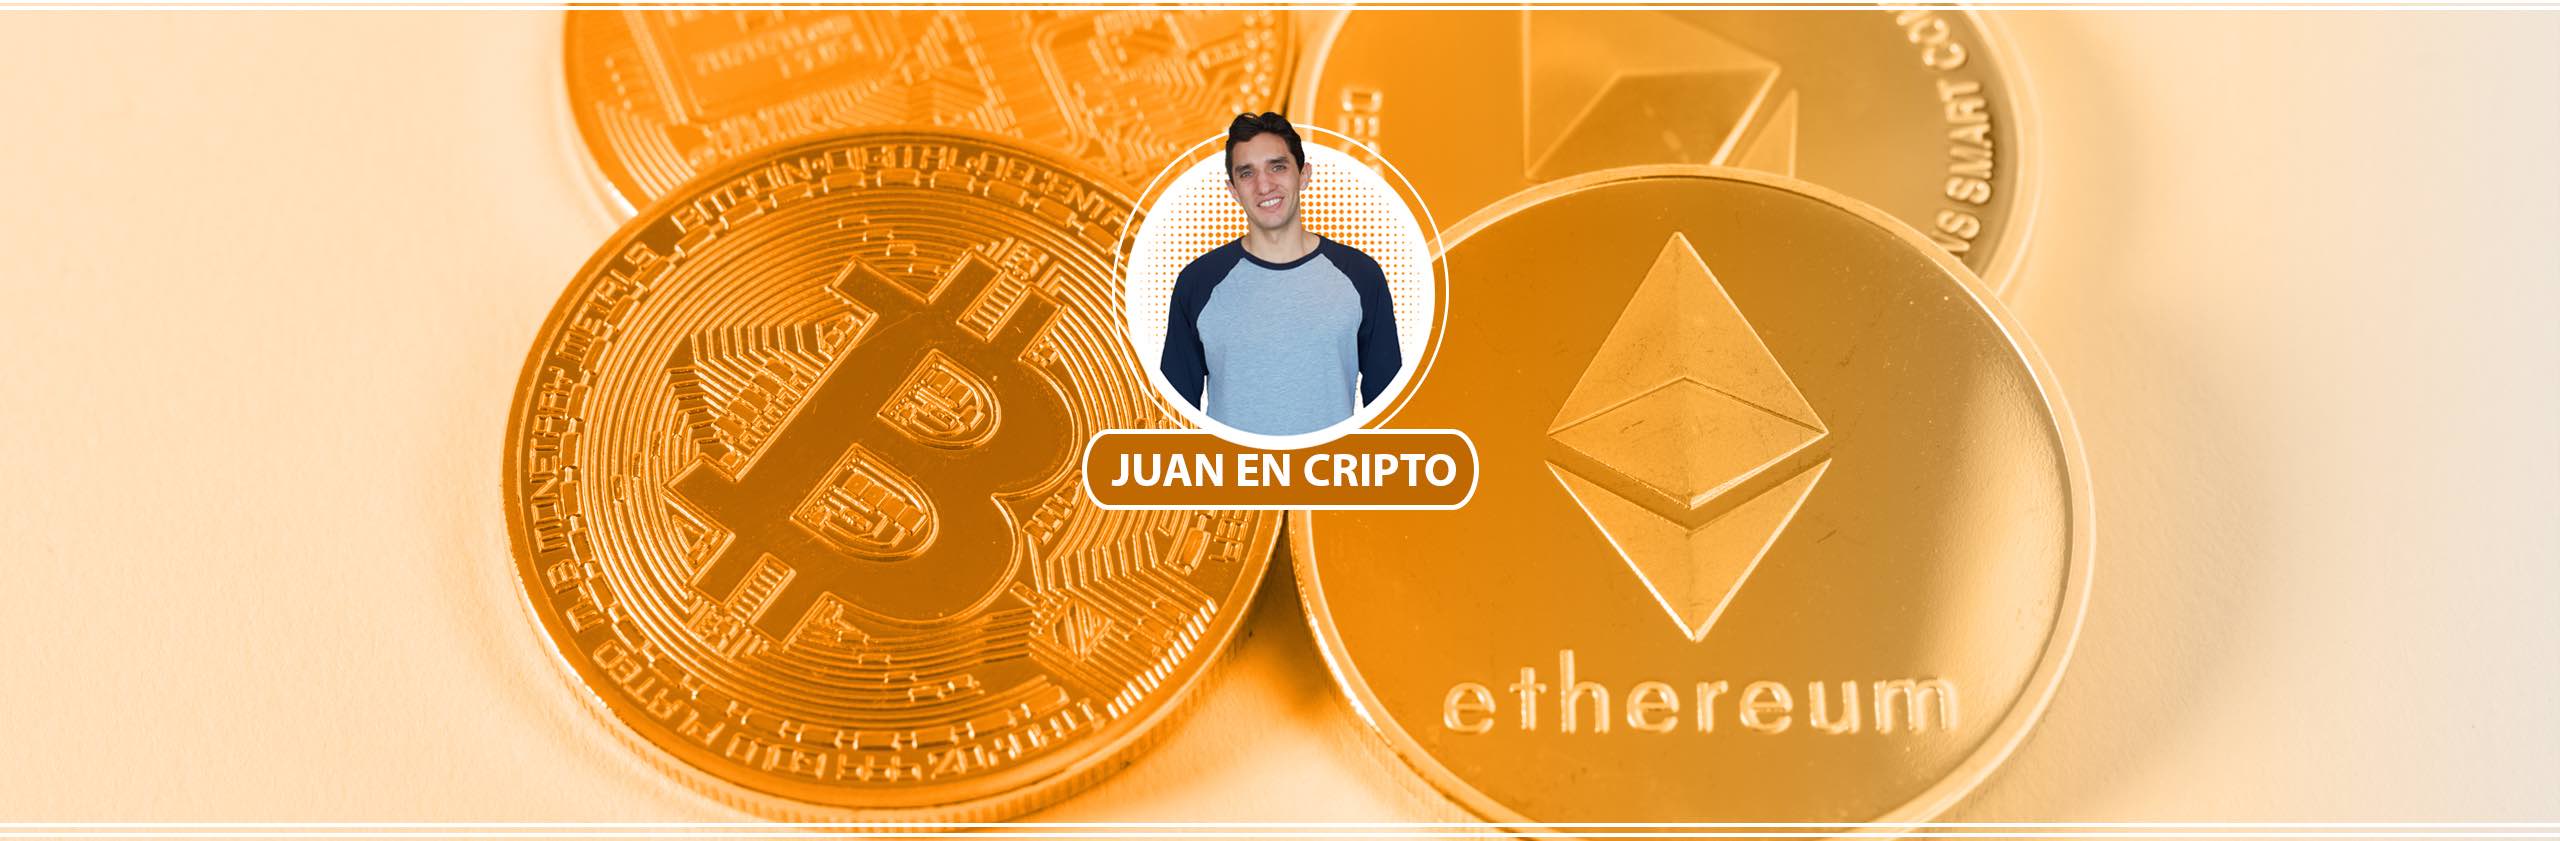 Juan en Cripto Banner Naranja - Bitcoin, Blockchain y Criptomonedas